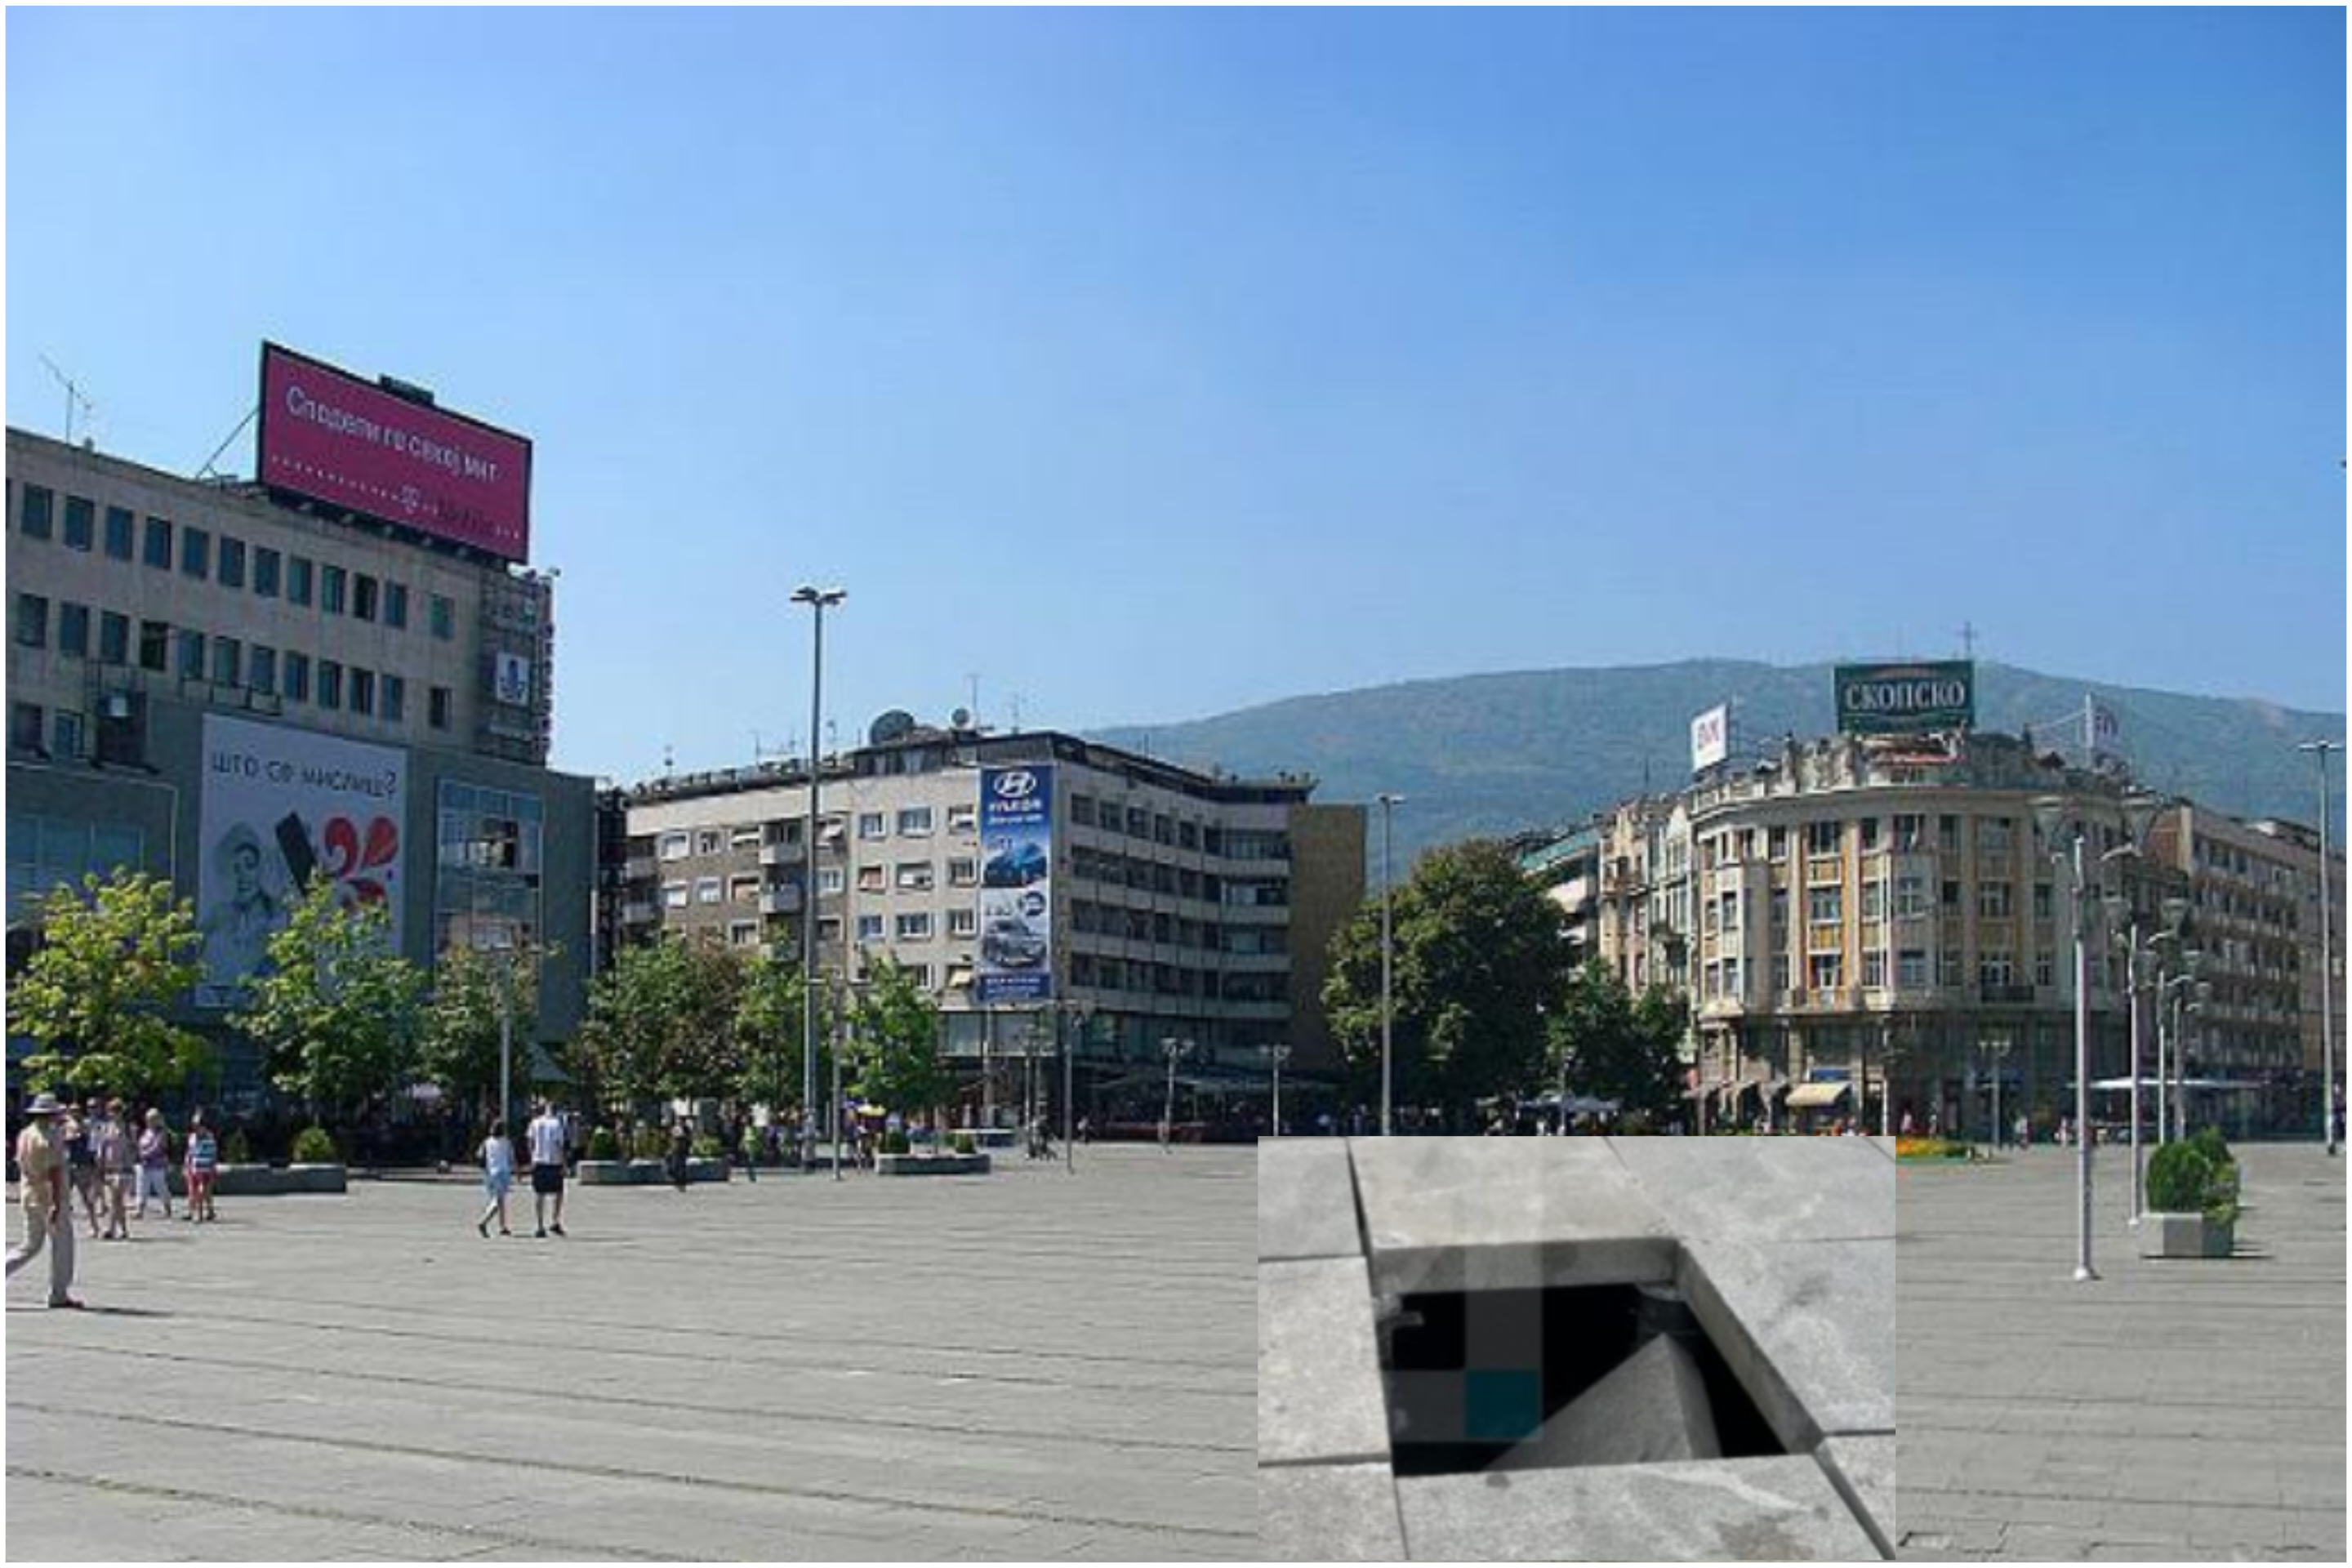 Sërish hapet vrimë në sheshin “Maqedonia” në Shkup